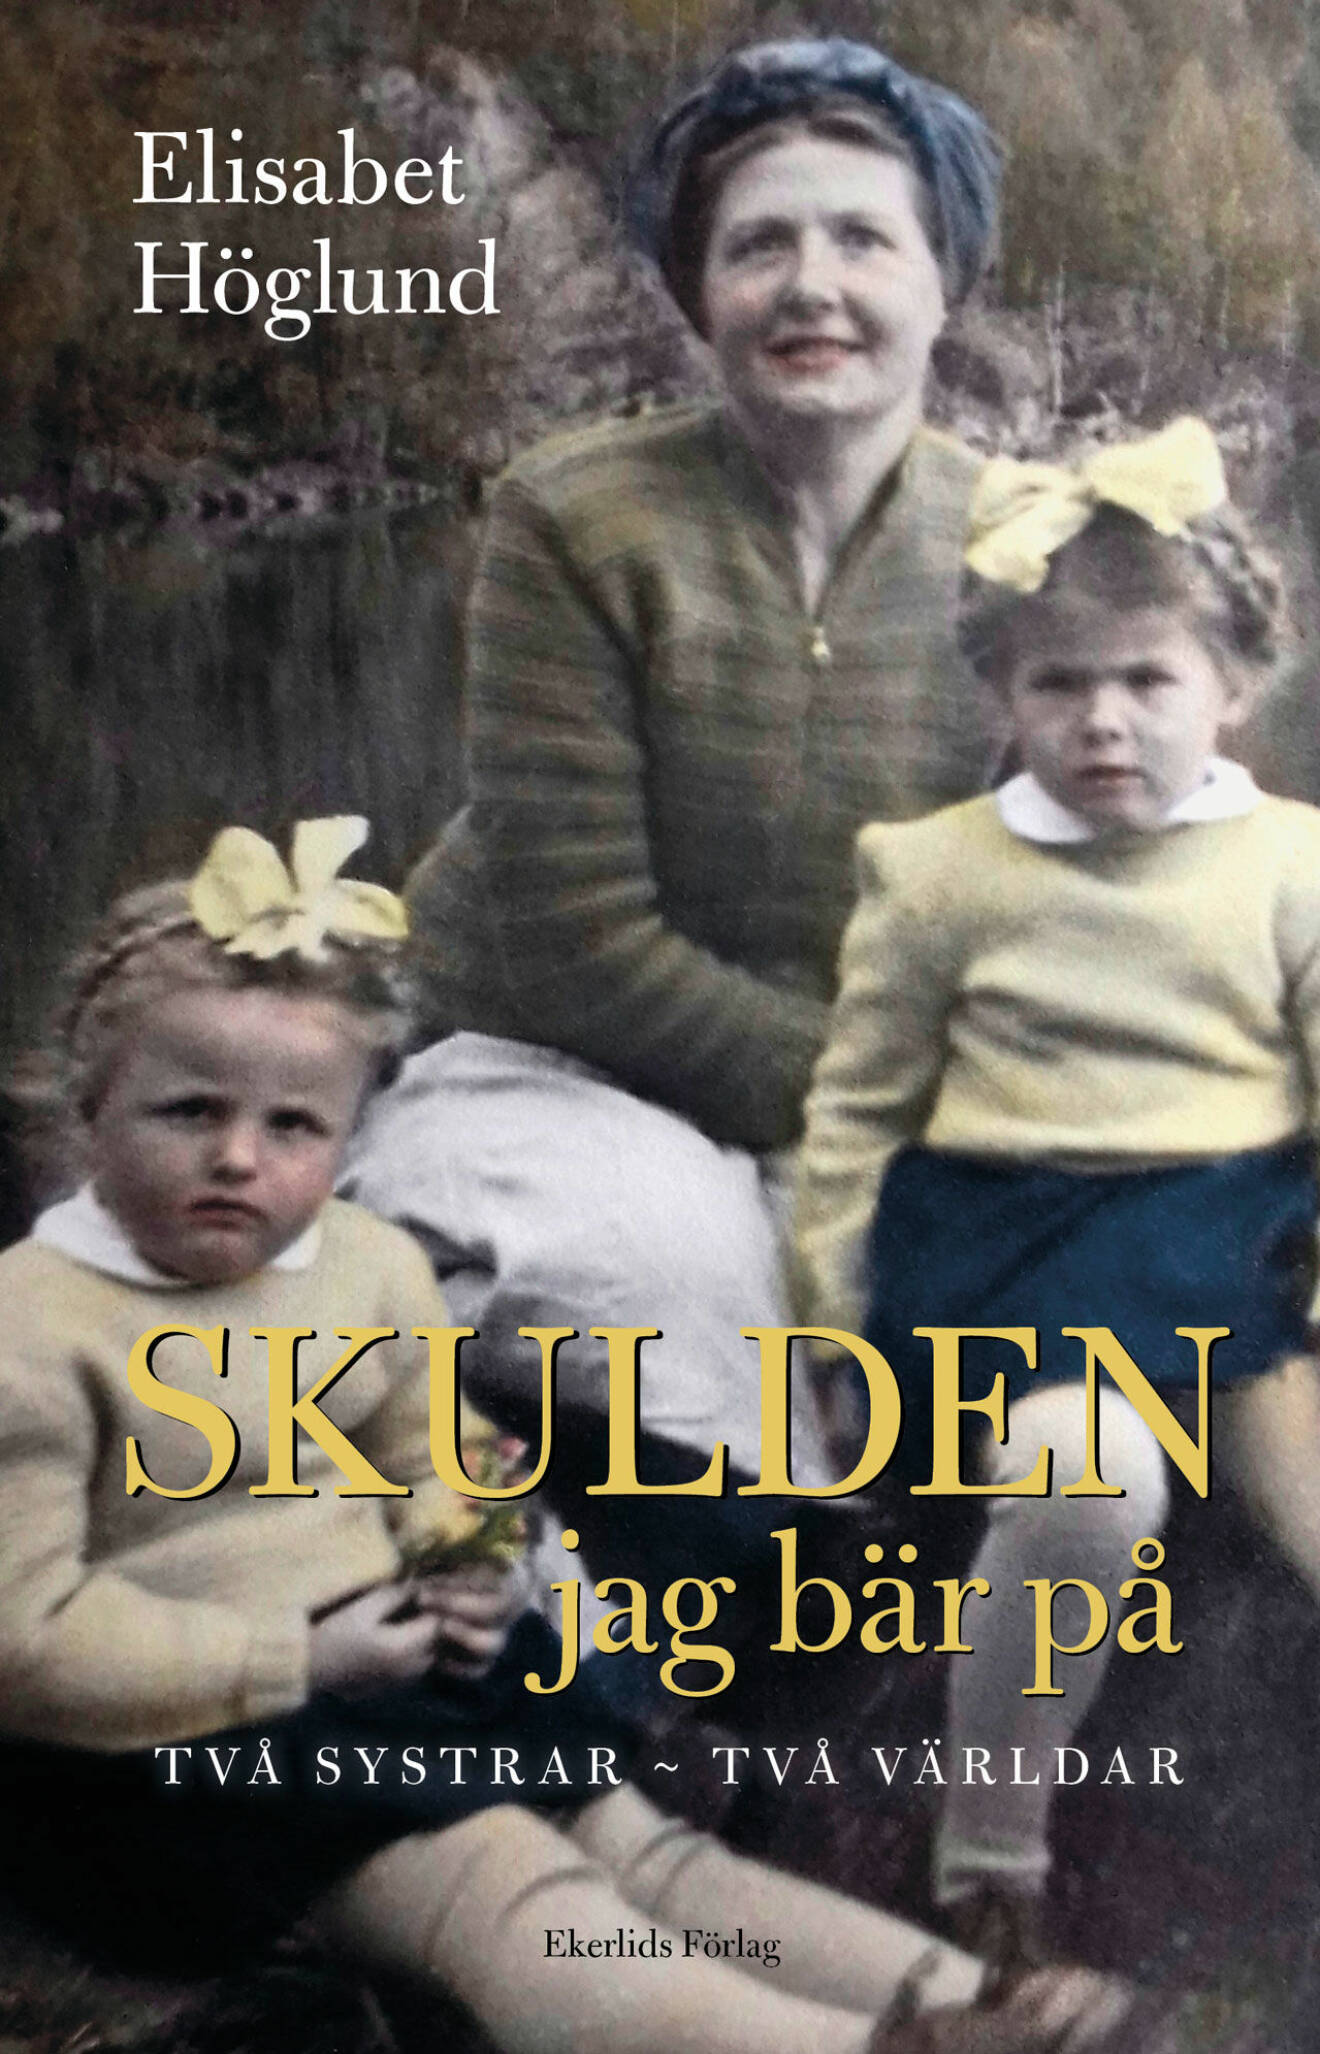 Elisabet Höglund har skrivit en bok om sin syster Birgitta 